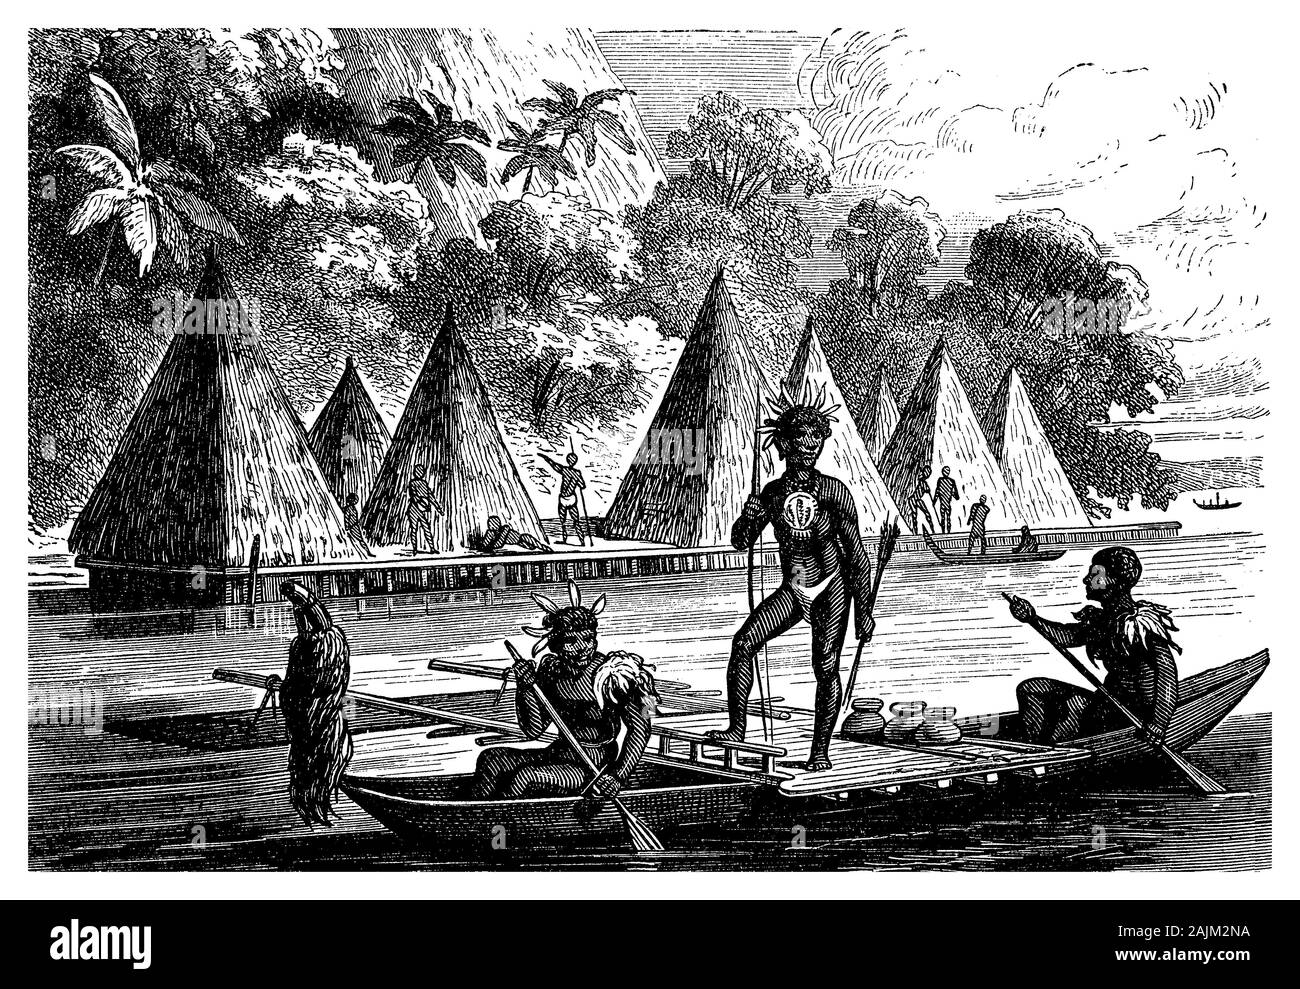 Papua-neuguinea Pfahlbauten angehoben auf Pfählen über dem Meer entlang der Küste oder auf Binnengewässer gebaut, Überschwemmungen, aus Bambus erstellt zu vermeiden und verstärkt mit deck Boards. Stockfoto